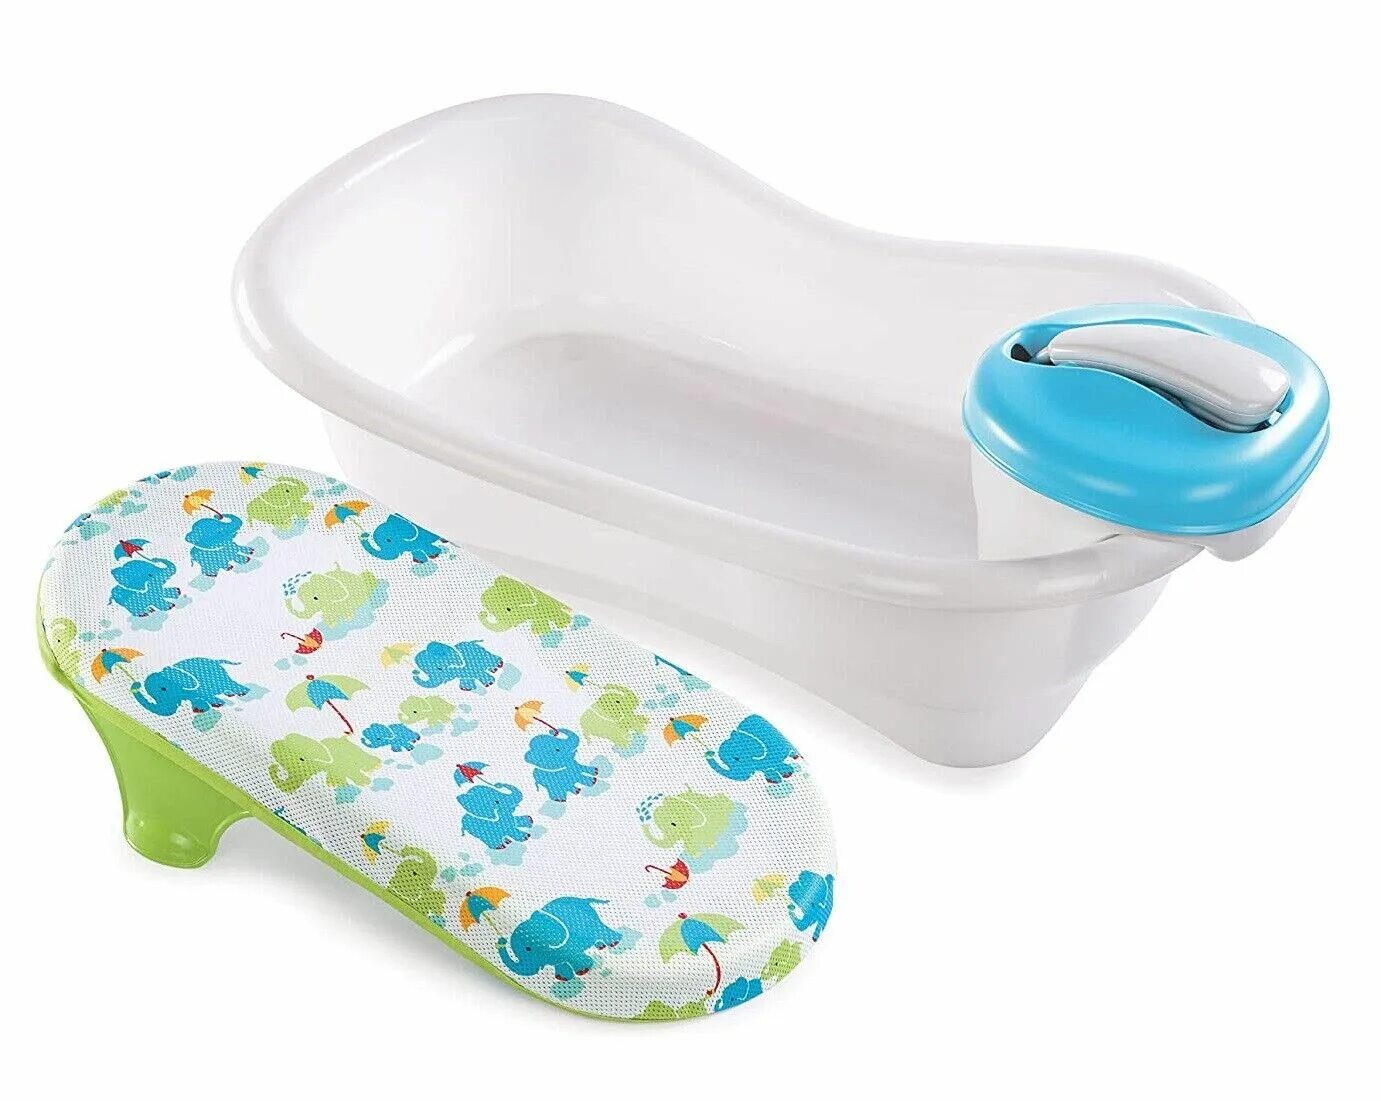 Ванночка Хэппи бэби для новорожденных. Подставка для купания новорожденных в ванну. Подставка в ванночку для новорожденного. Ванна с горкой для новорожденных. Подставка для ванной для детей